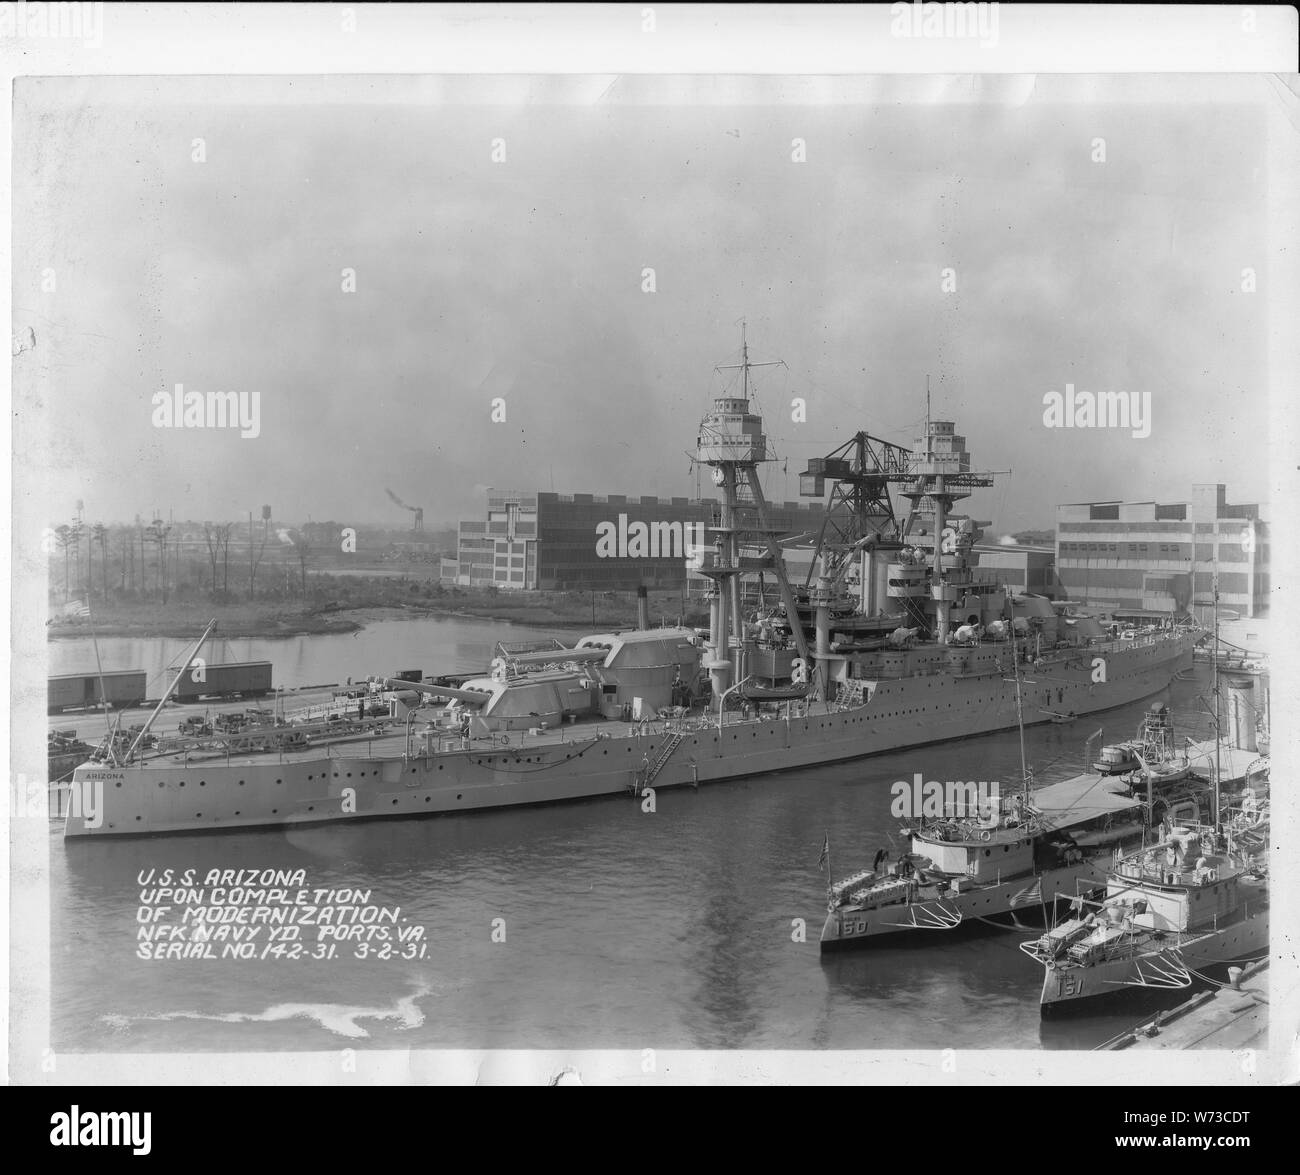 USS Arizona, à l'achèvement de la modernisation, Nfk. Navy Yd. Les ports. VA. N° de série 142-31. 3-2-31. ; quart avant bâbord vue sur le USS Arizona dans le chantier naval de Norfolk à Portsmouth, en Virginie, en mars 1931 à la suite d'une modernisation. Banque D'Images